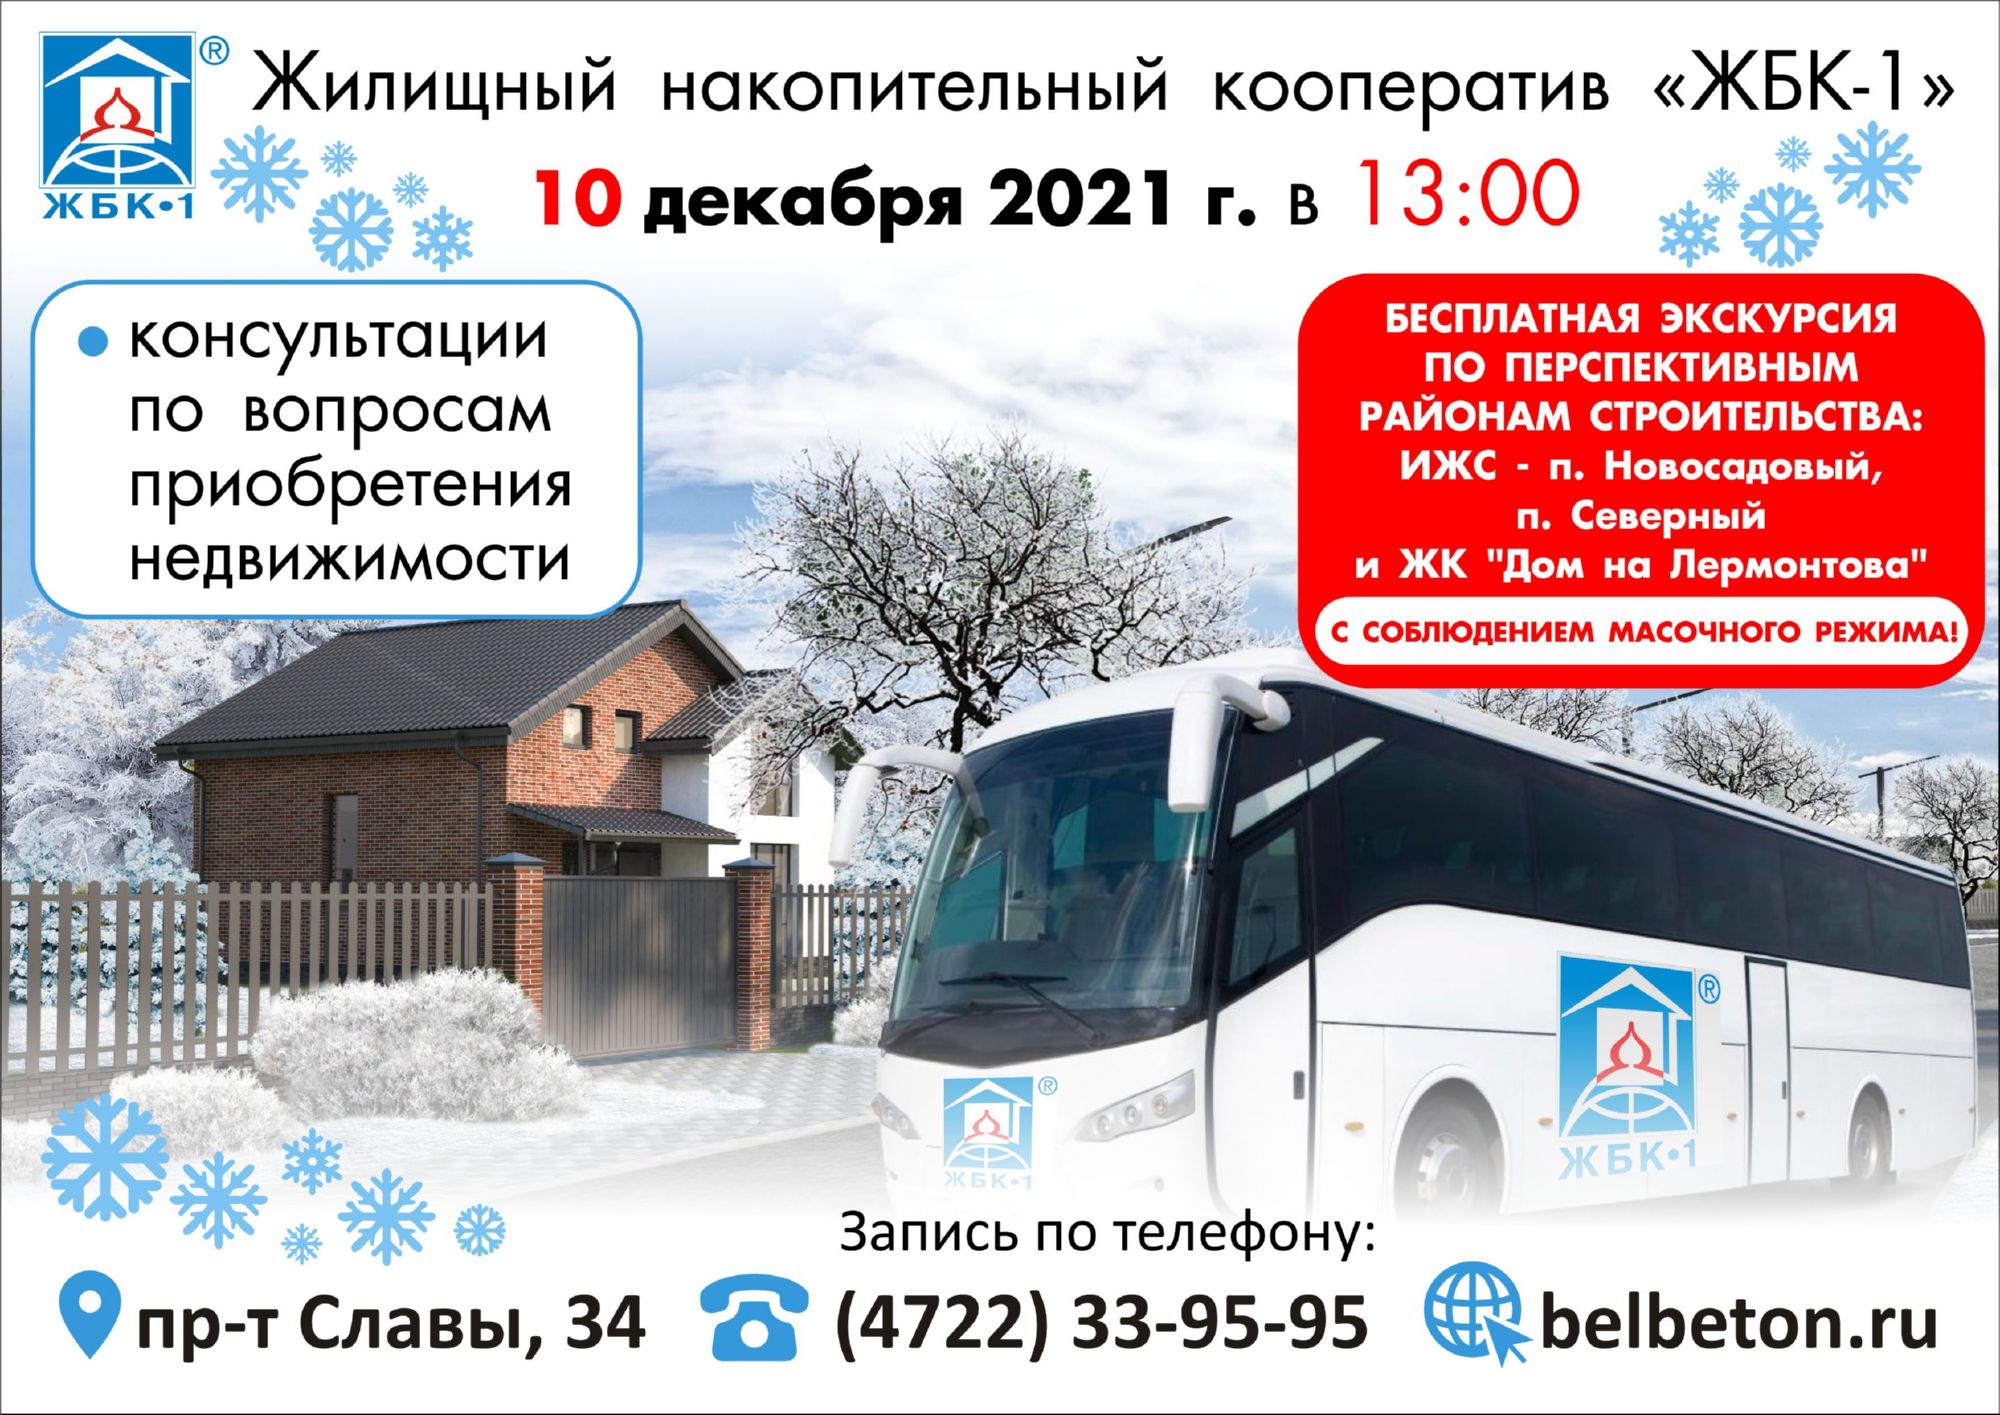 Приглашаем на экскурсию по перспективным районам строительства ЖБК-1 10 декабря в 13:00, отправление автобуса от пр-та Славы, 36.